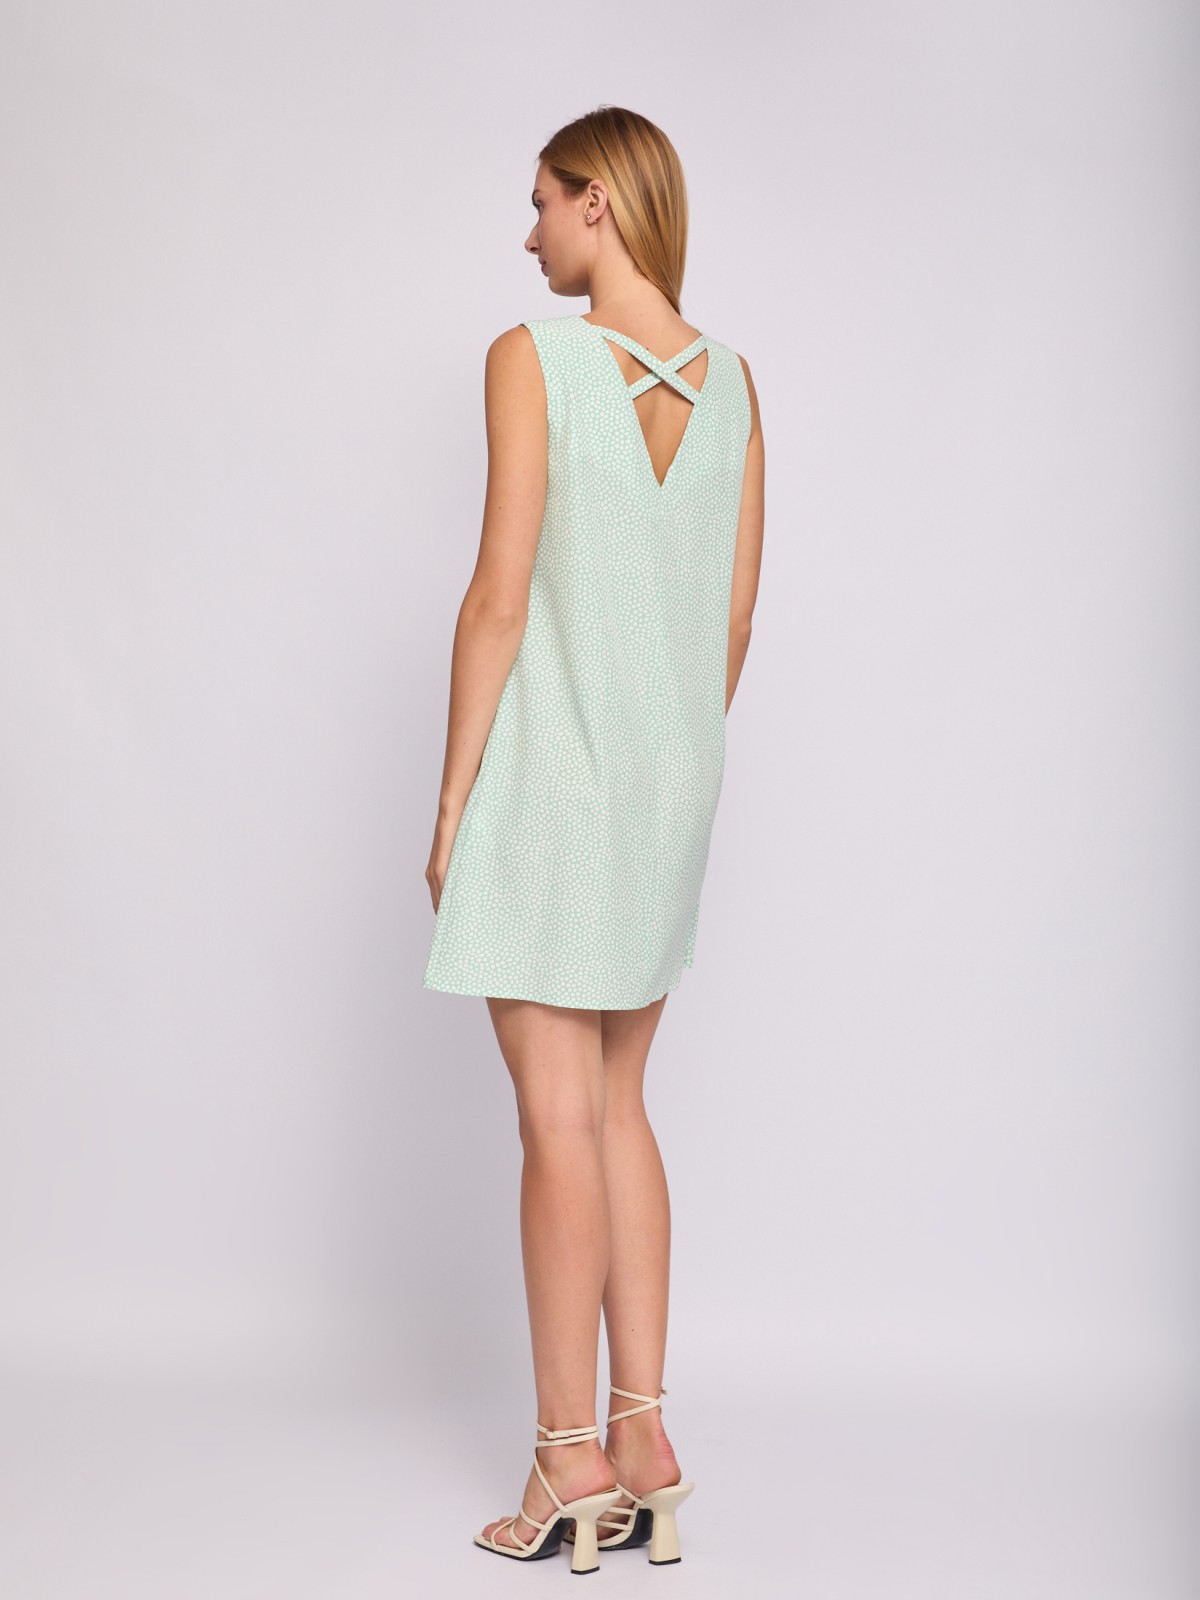 Платье мини без рукавов с вырезом на спине zolla 024238262232, цвет светло-зеленый, размер XS - фото 5